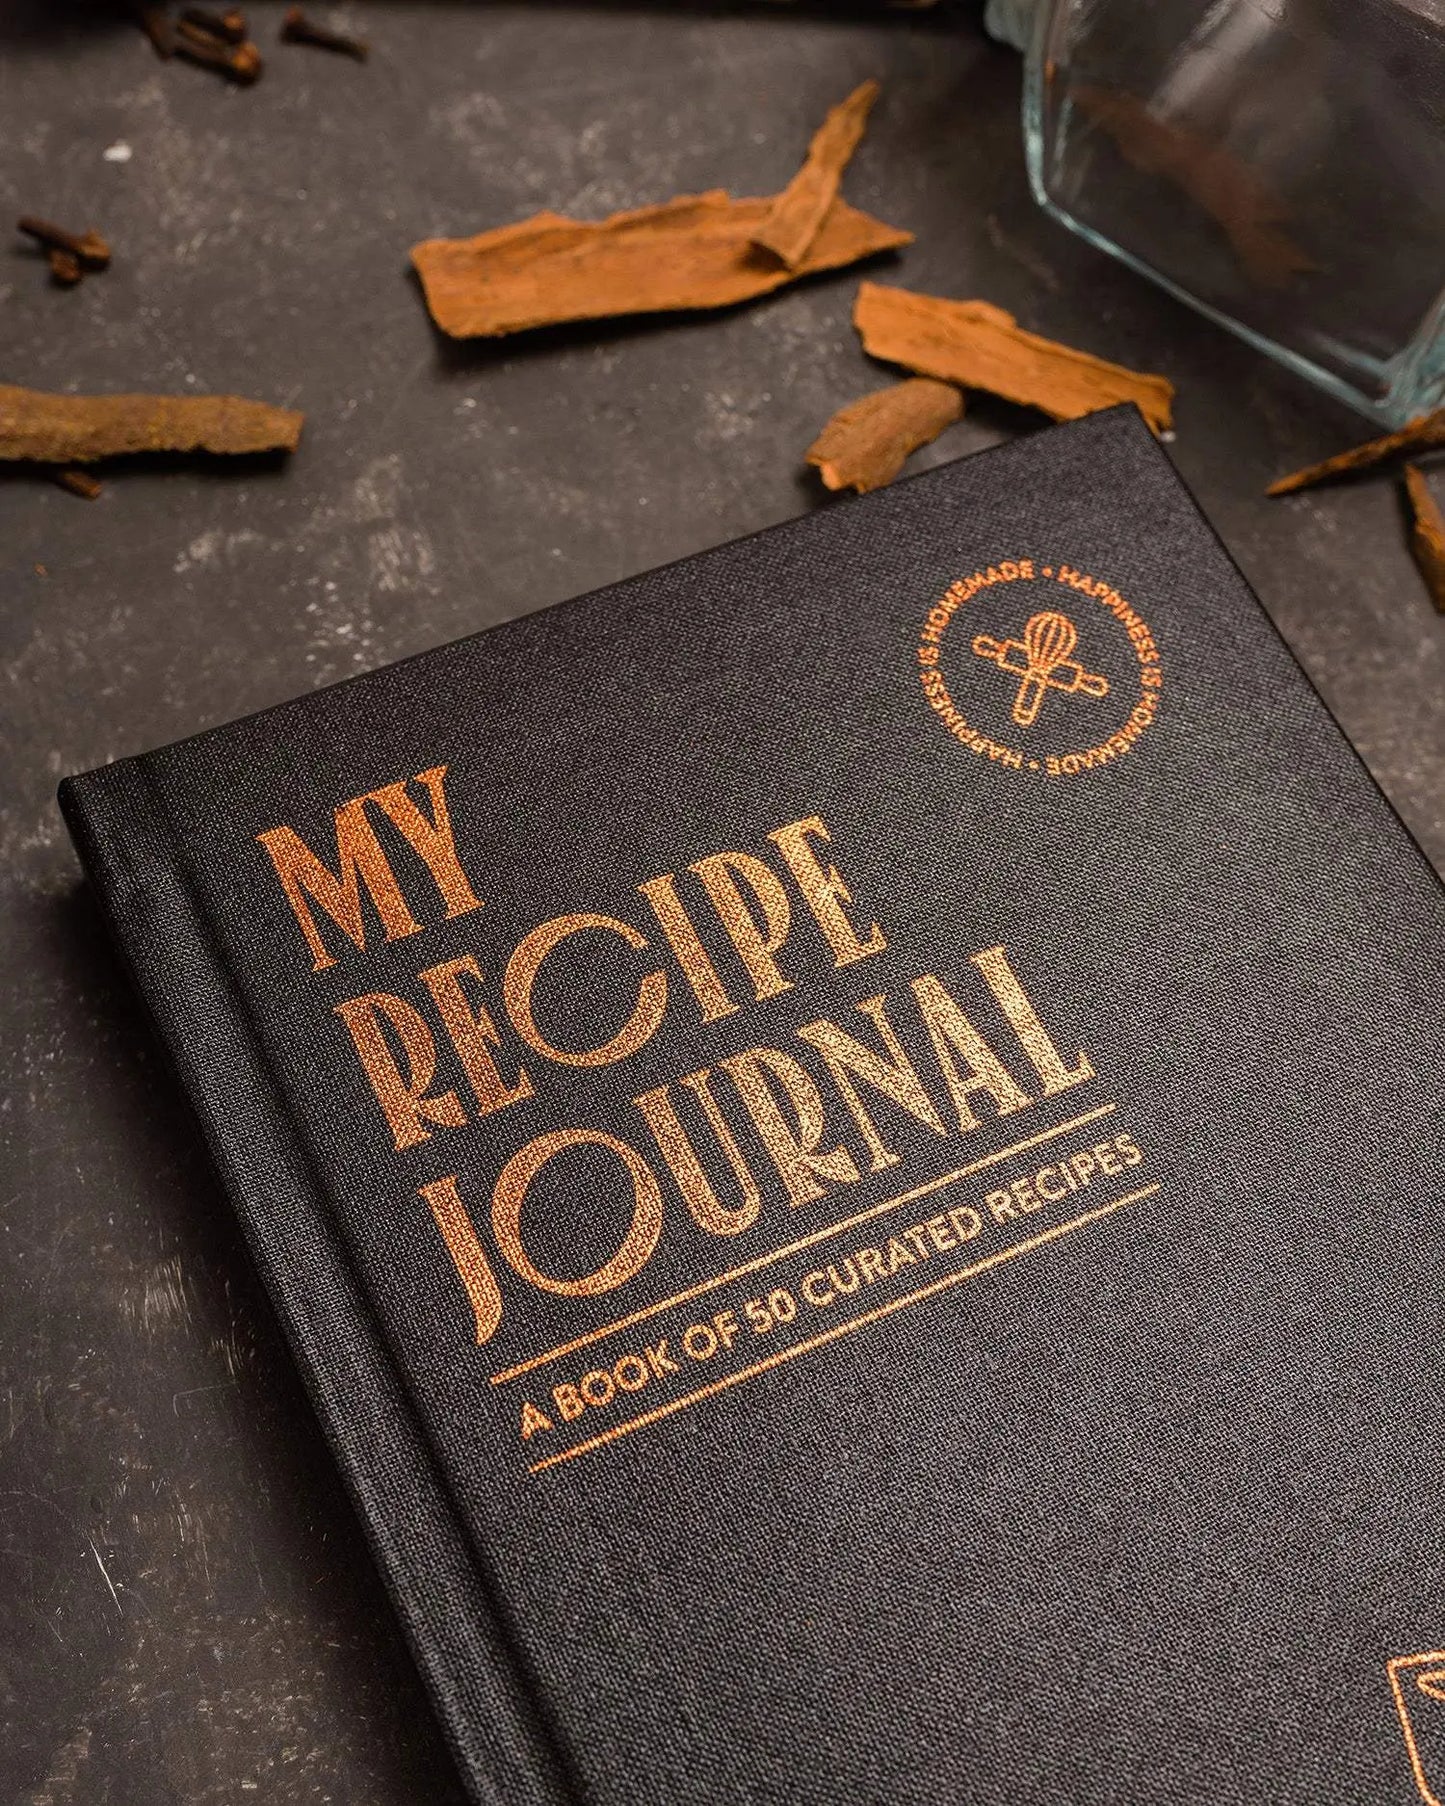 My Recipe Journal v.2 